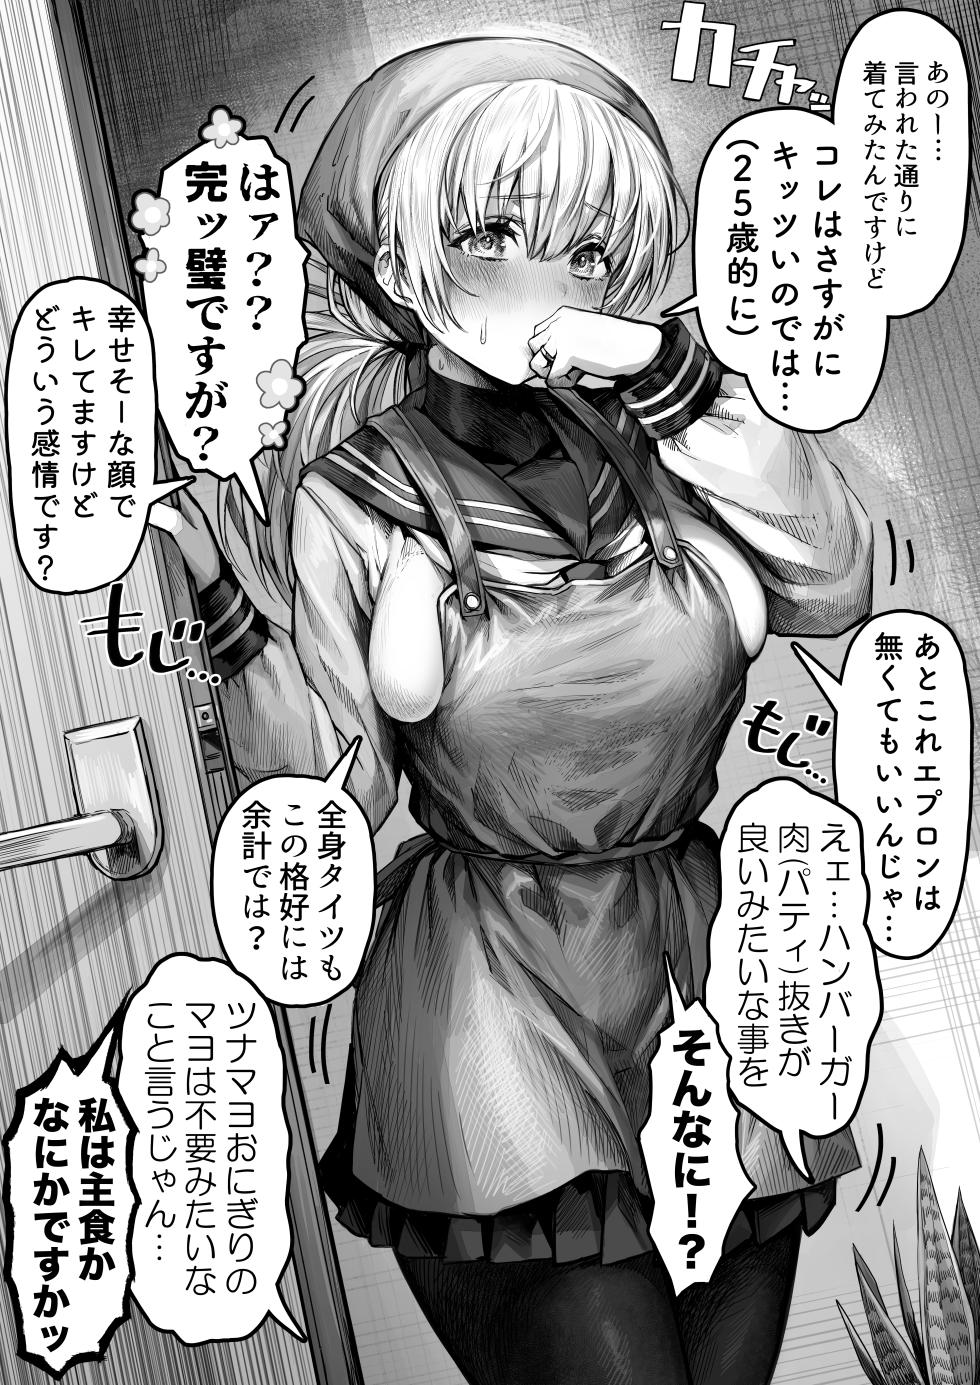 [gibachan] Okusan manga collection - Page 35